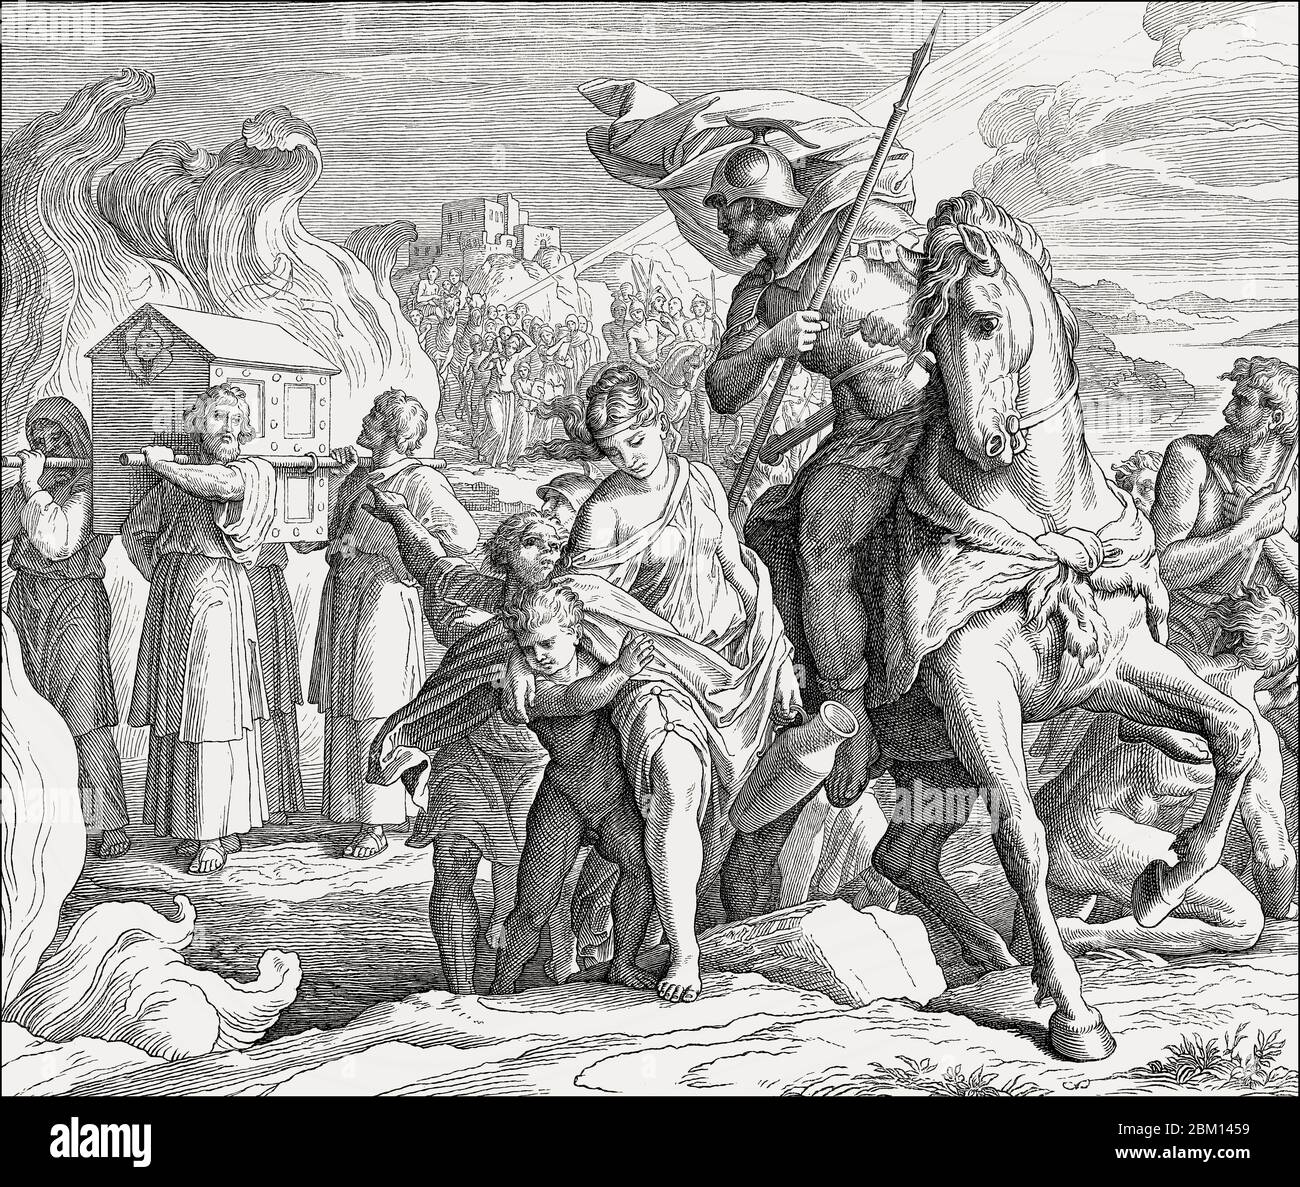 Traversée de la Jordanie, ancien Testament, par Julius Schnorr von Carolsfeld, 1860 Banque D'Images